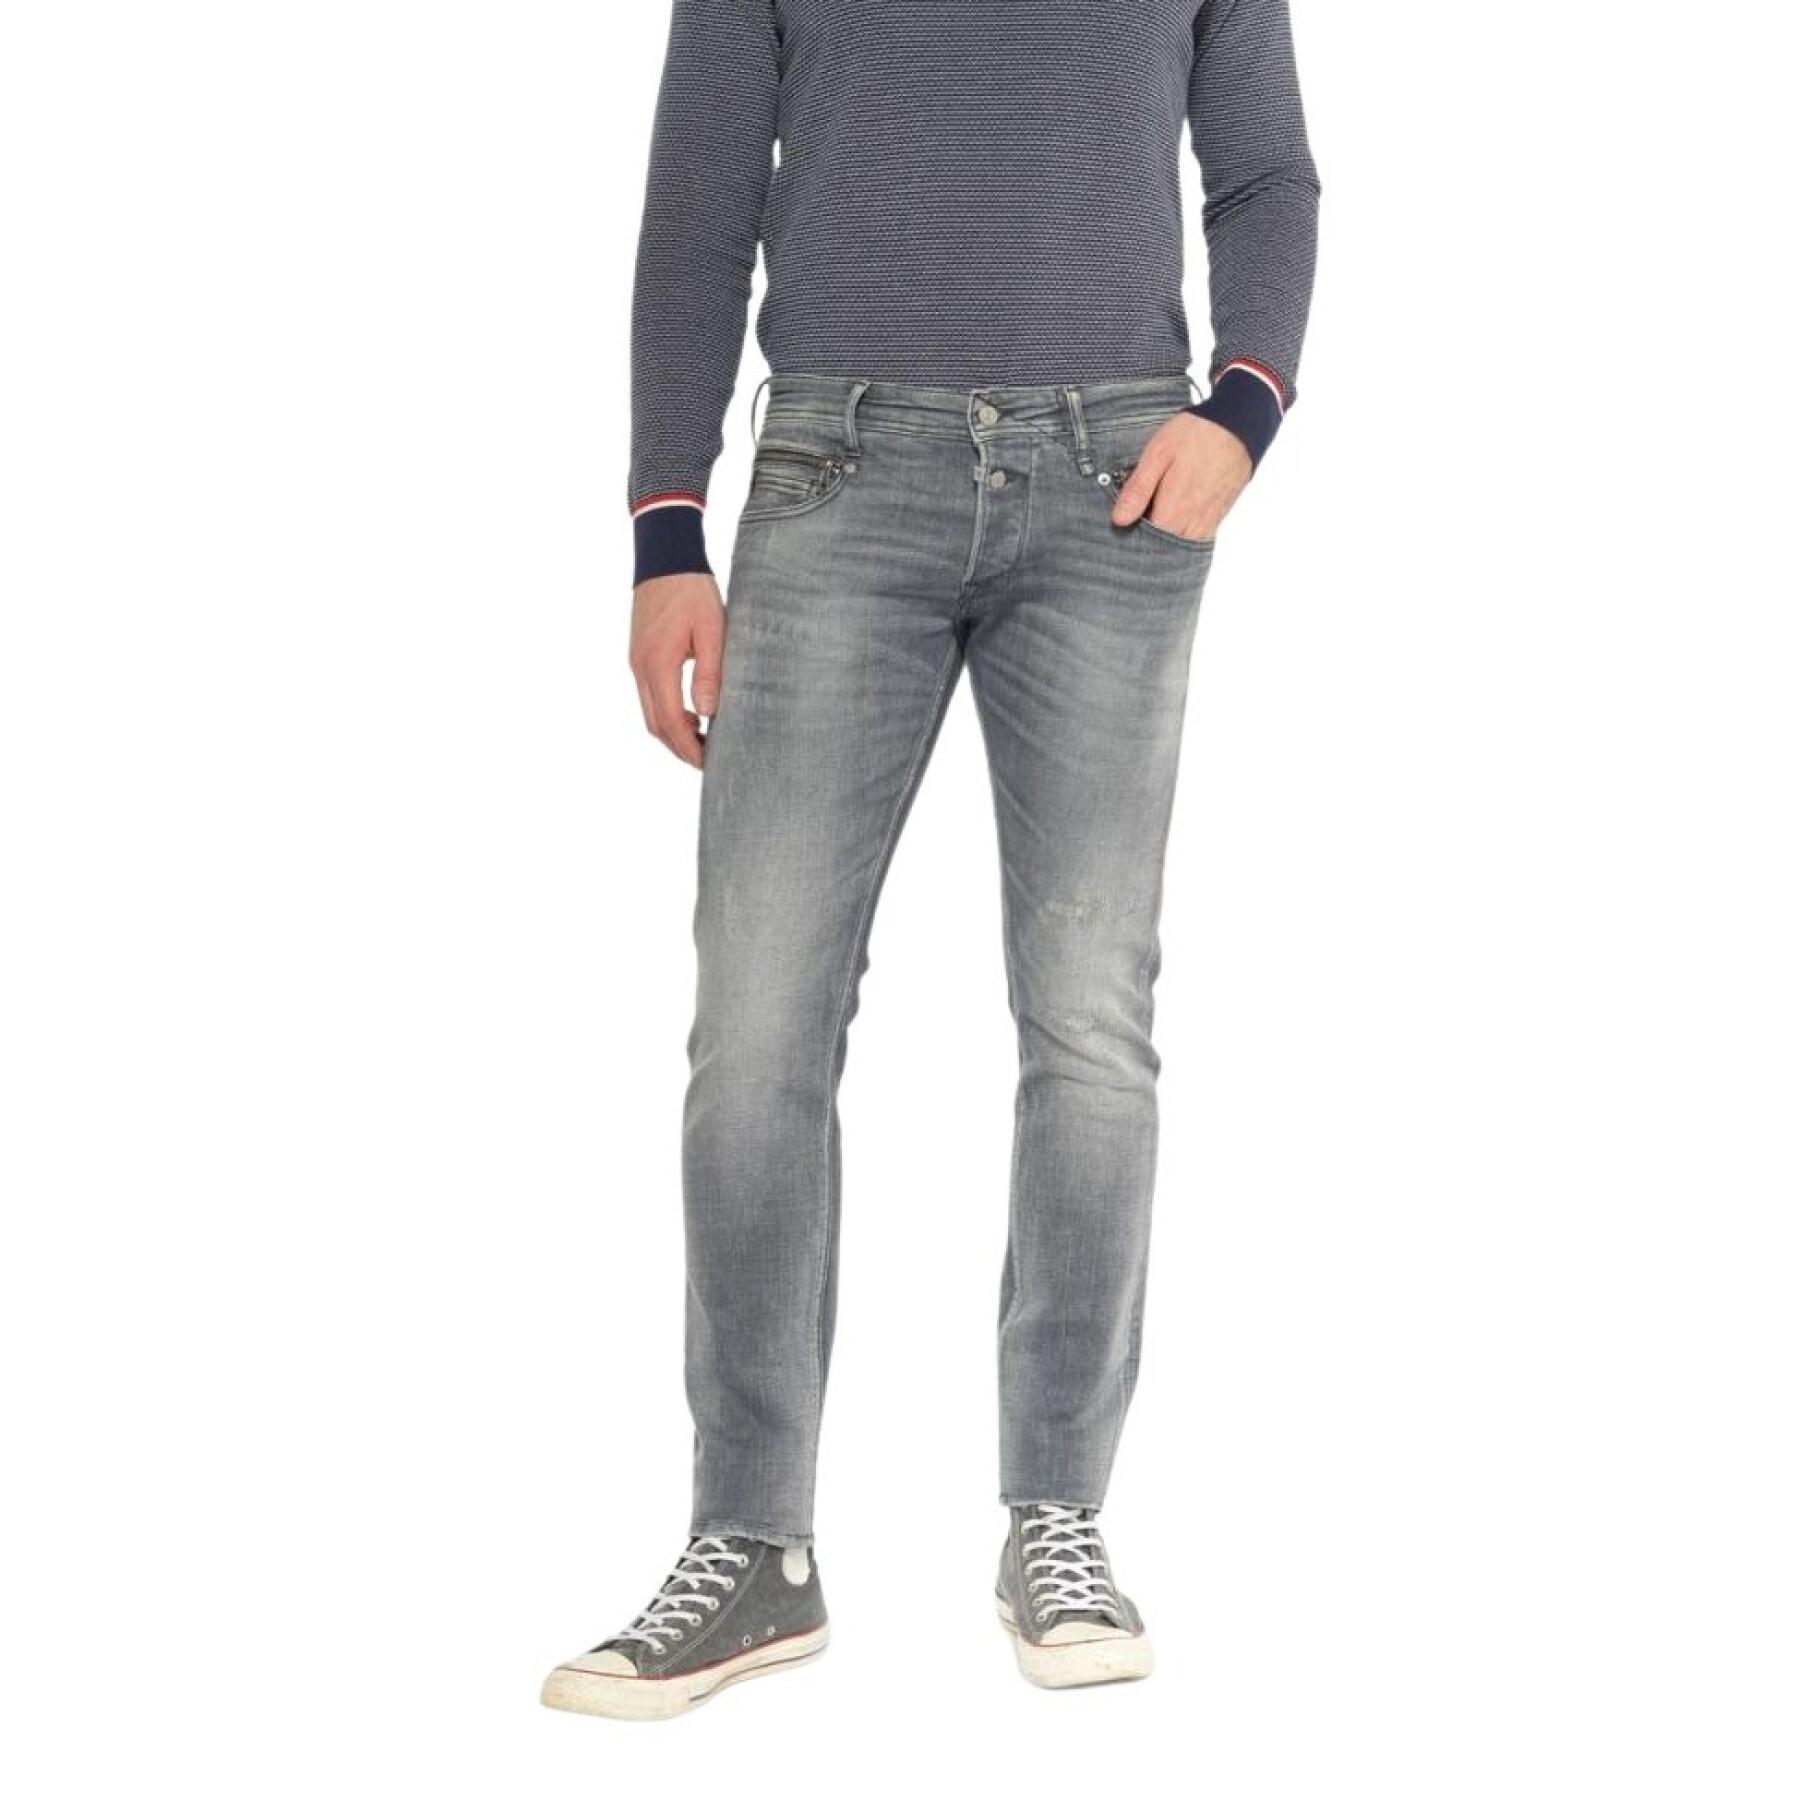 Slim jeans Le temps des cerises Dubbo 700/11